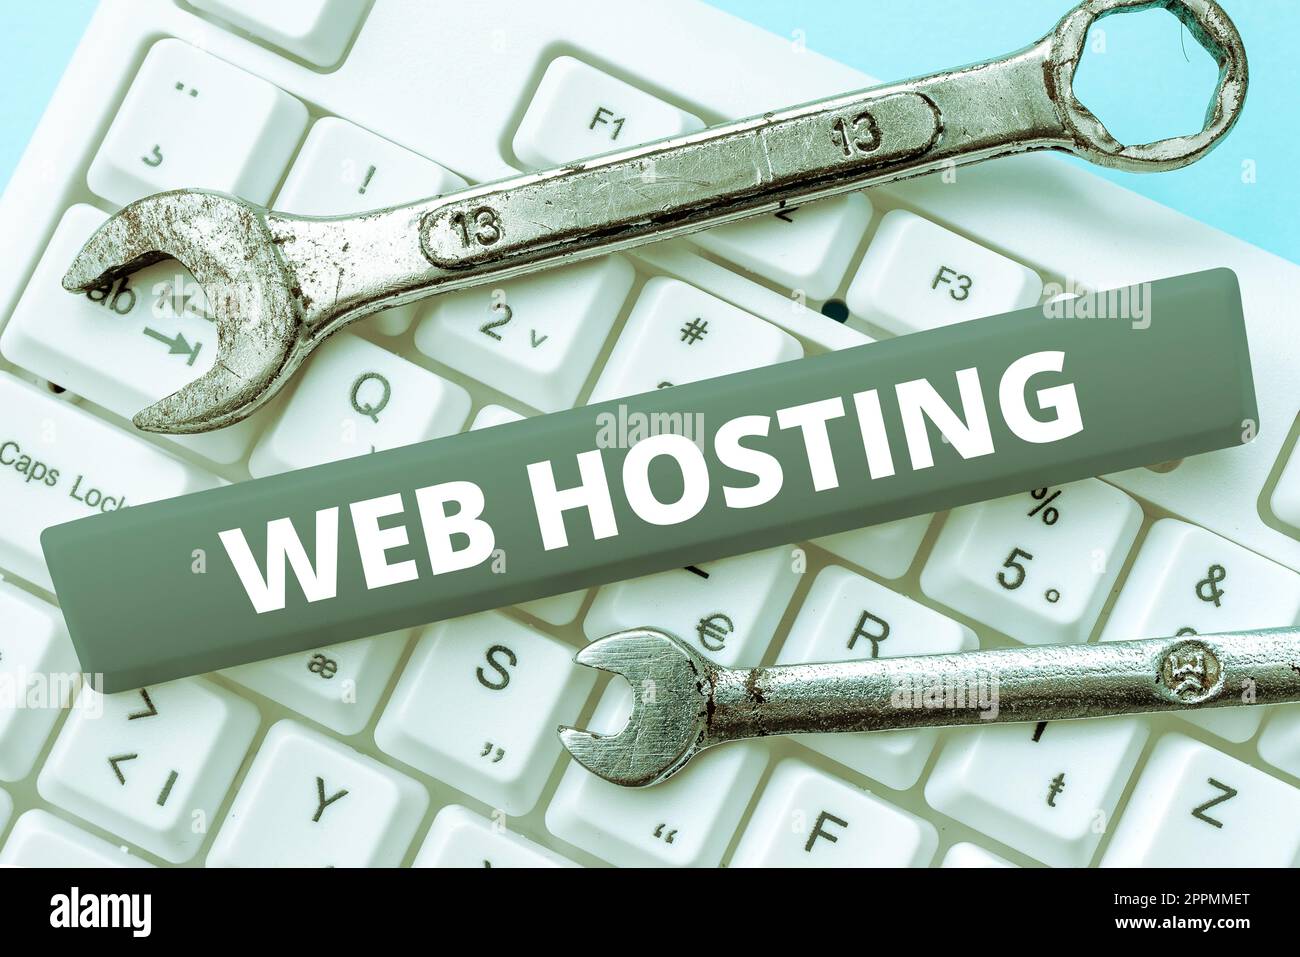 Affiche affichant Web Hosting. Les entreprises présentent l'activité de fournir de l'espace de stockage et l'accès aux sites Web Banque D'Images